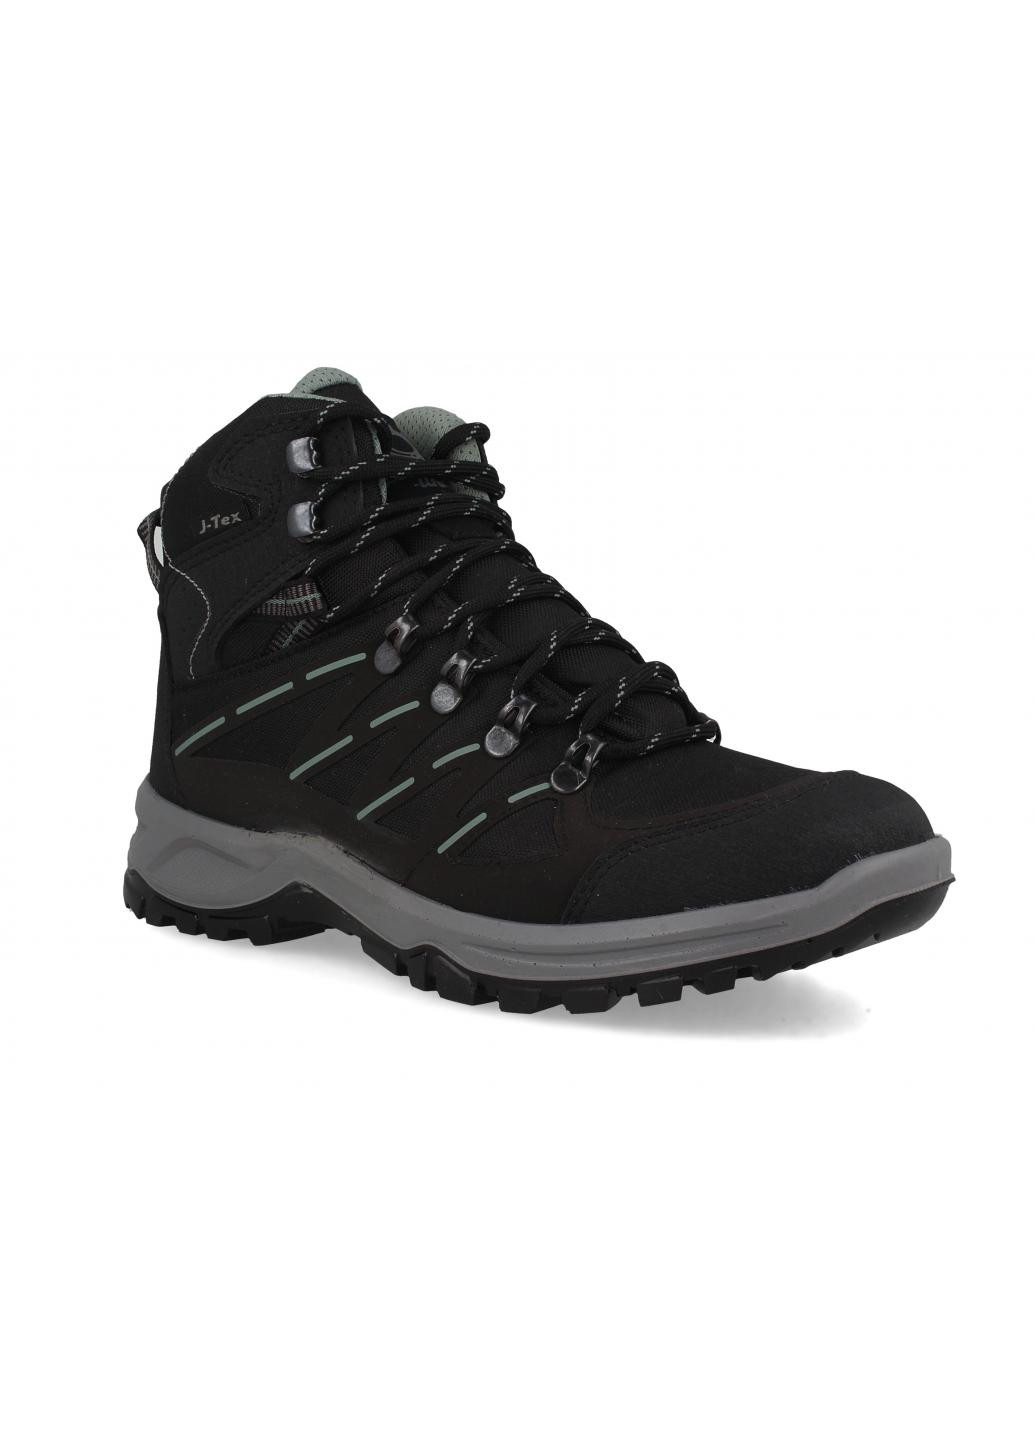 Черные зимние мужские ботинки tactical j-tex 37022-9 Forester